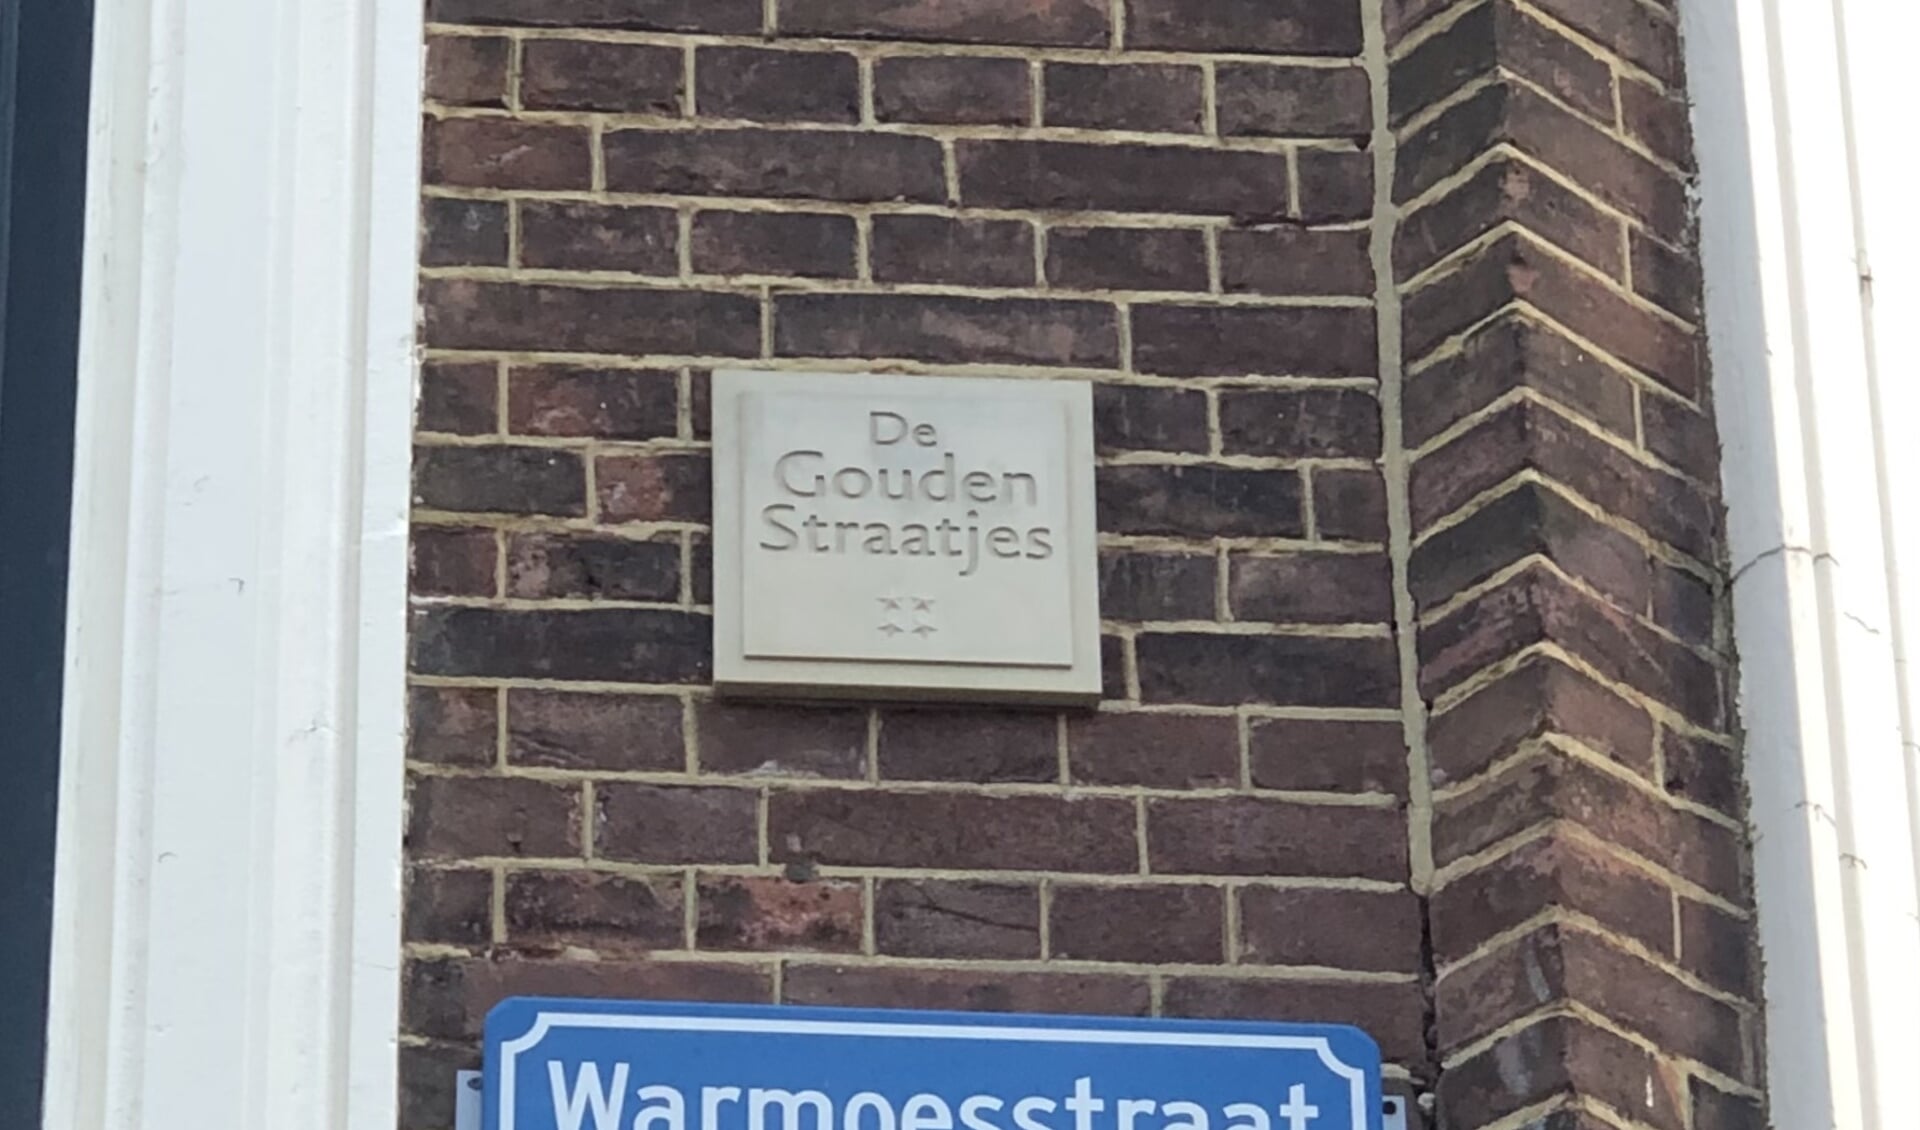 Fietsen weer mogelijk in diverse Haarlemse straten.